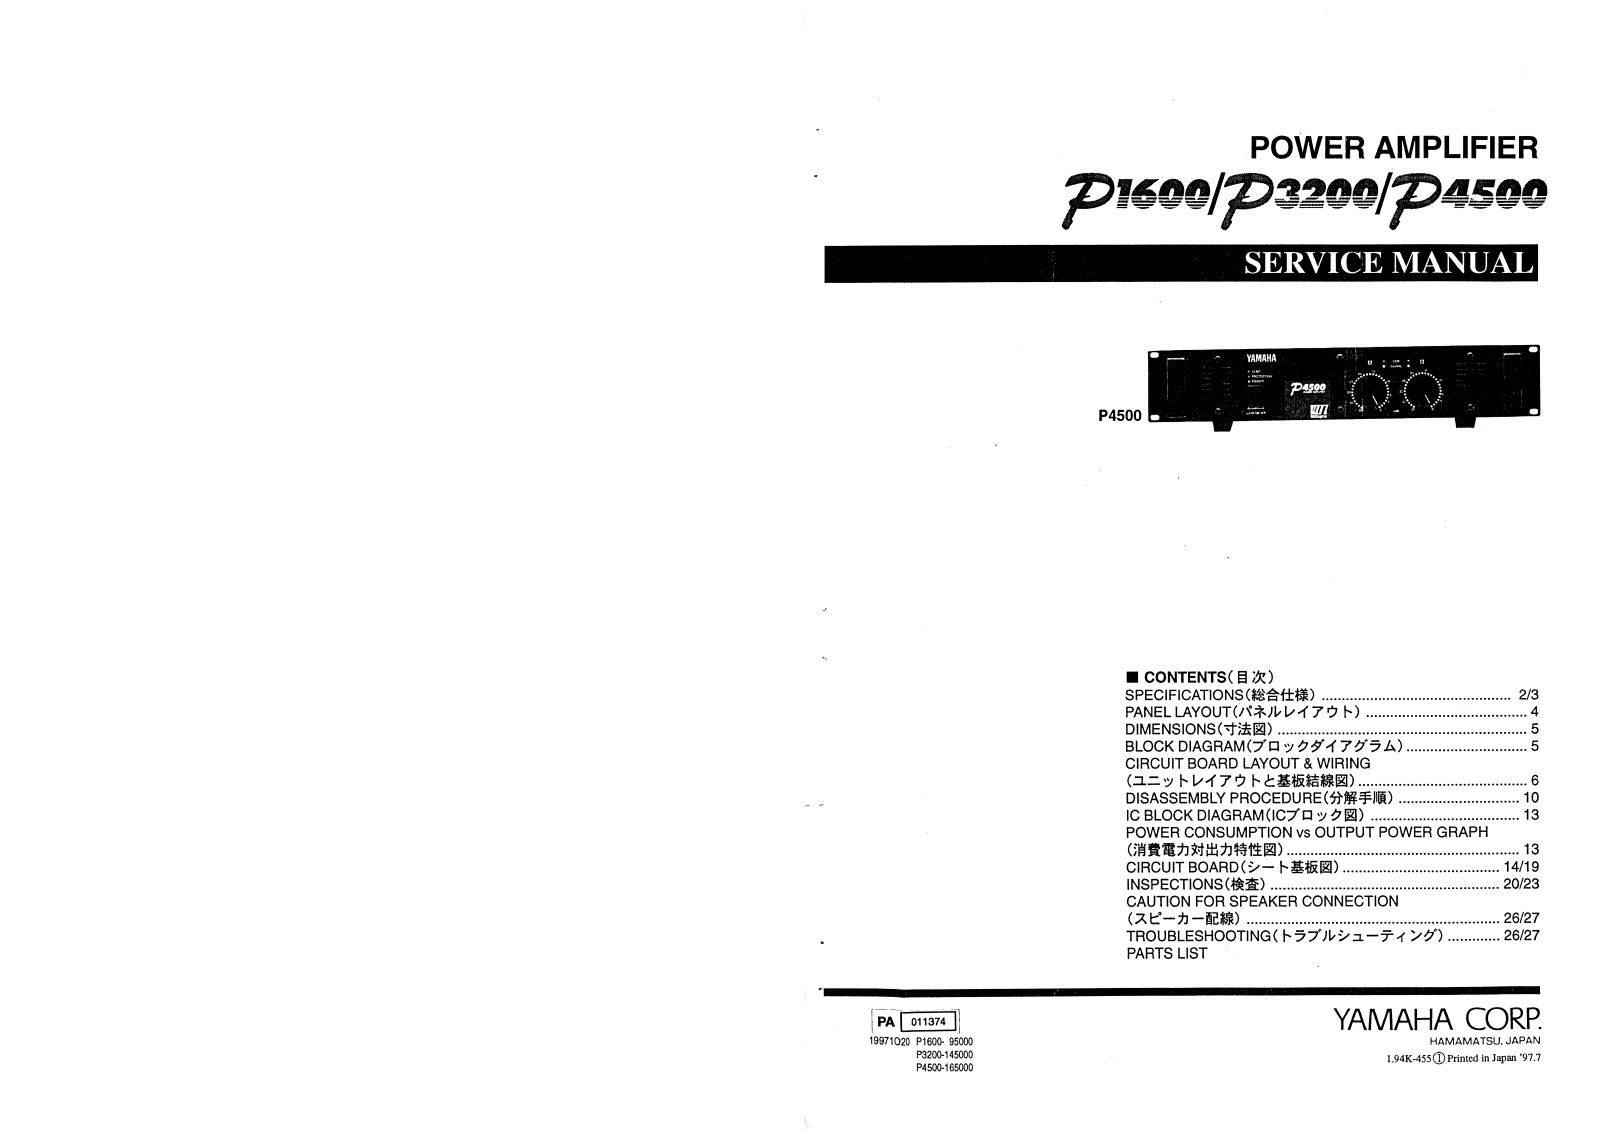 Yamaha P-1600, P-3200, P-4500 Service manual